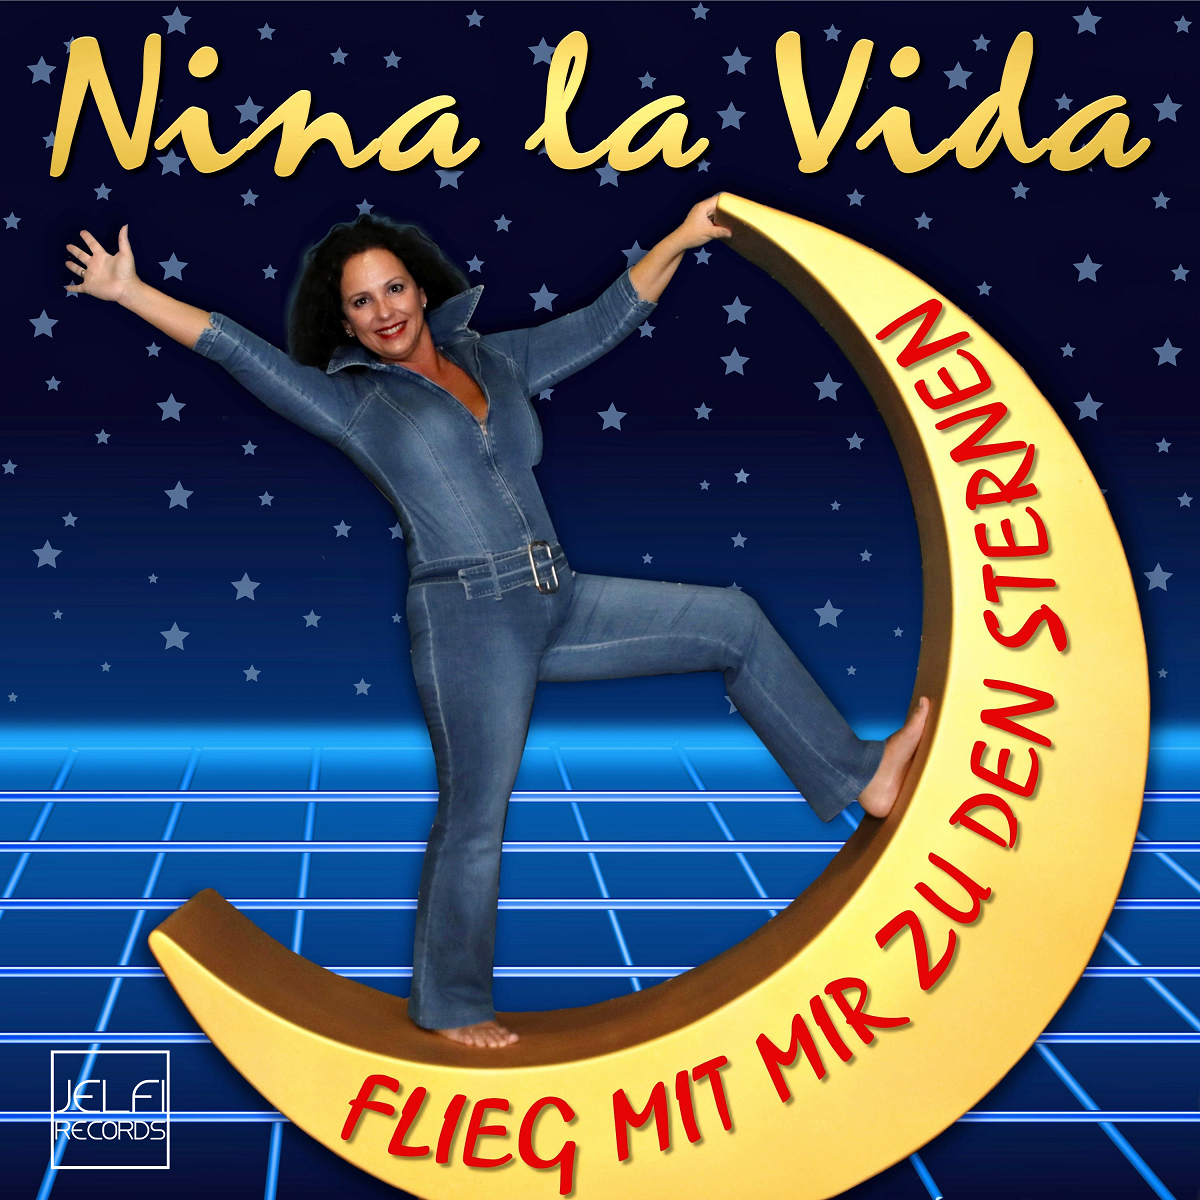 Nina la Vida - flieg mit mir zu den Sternen - Cover.png